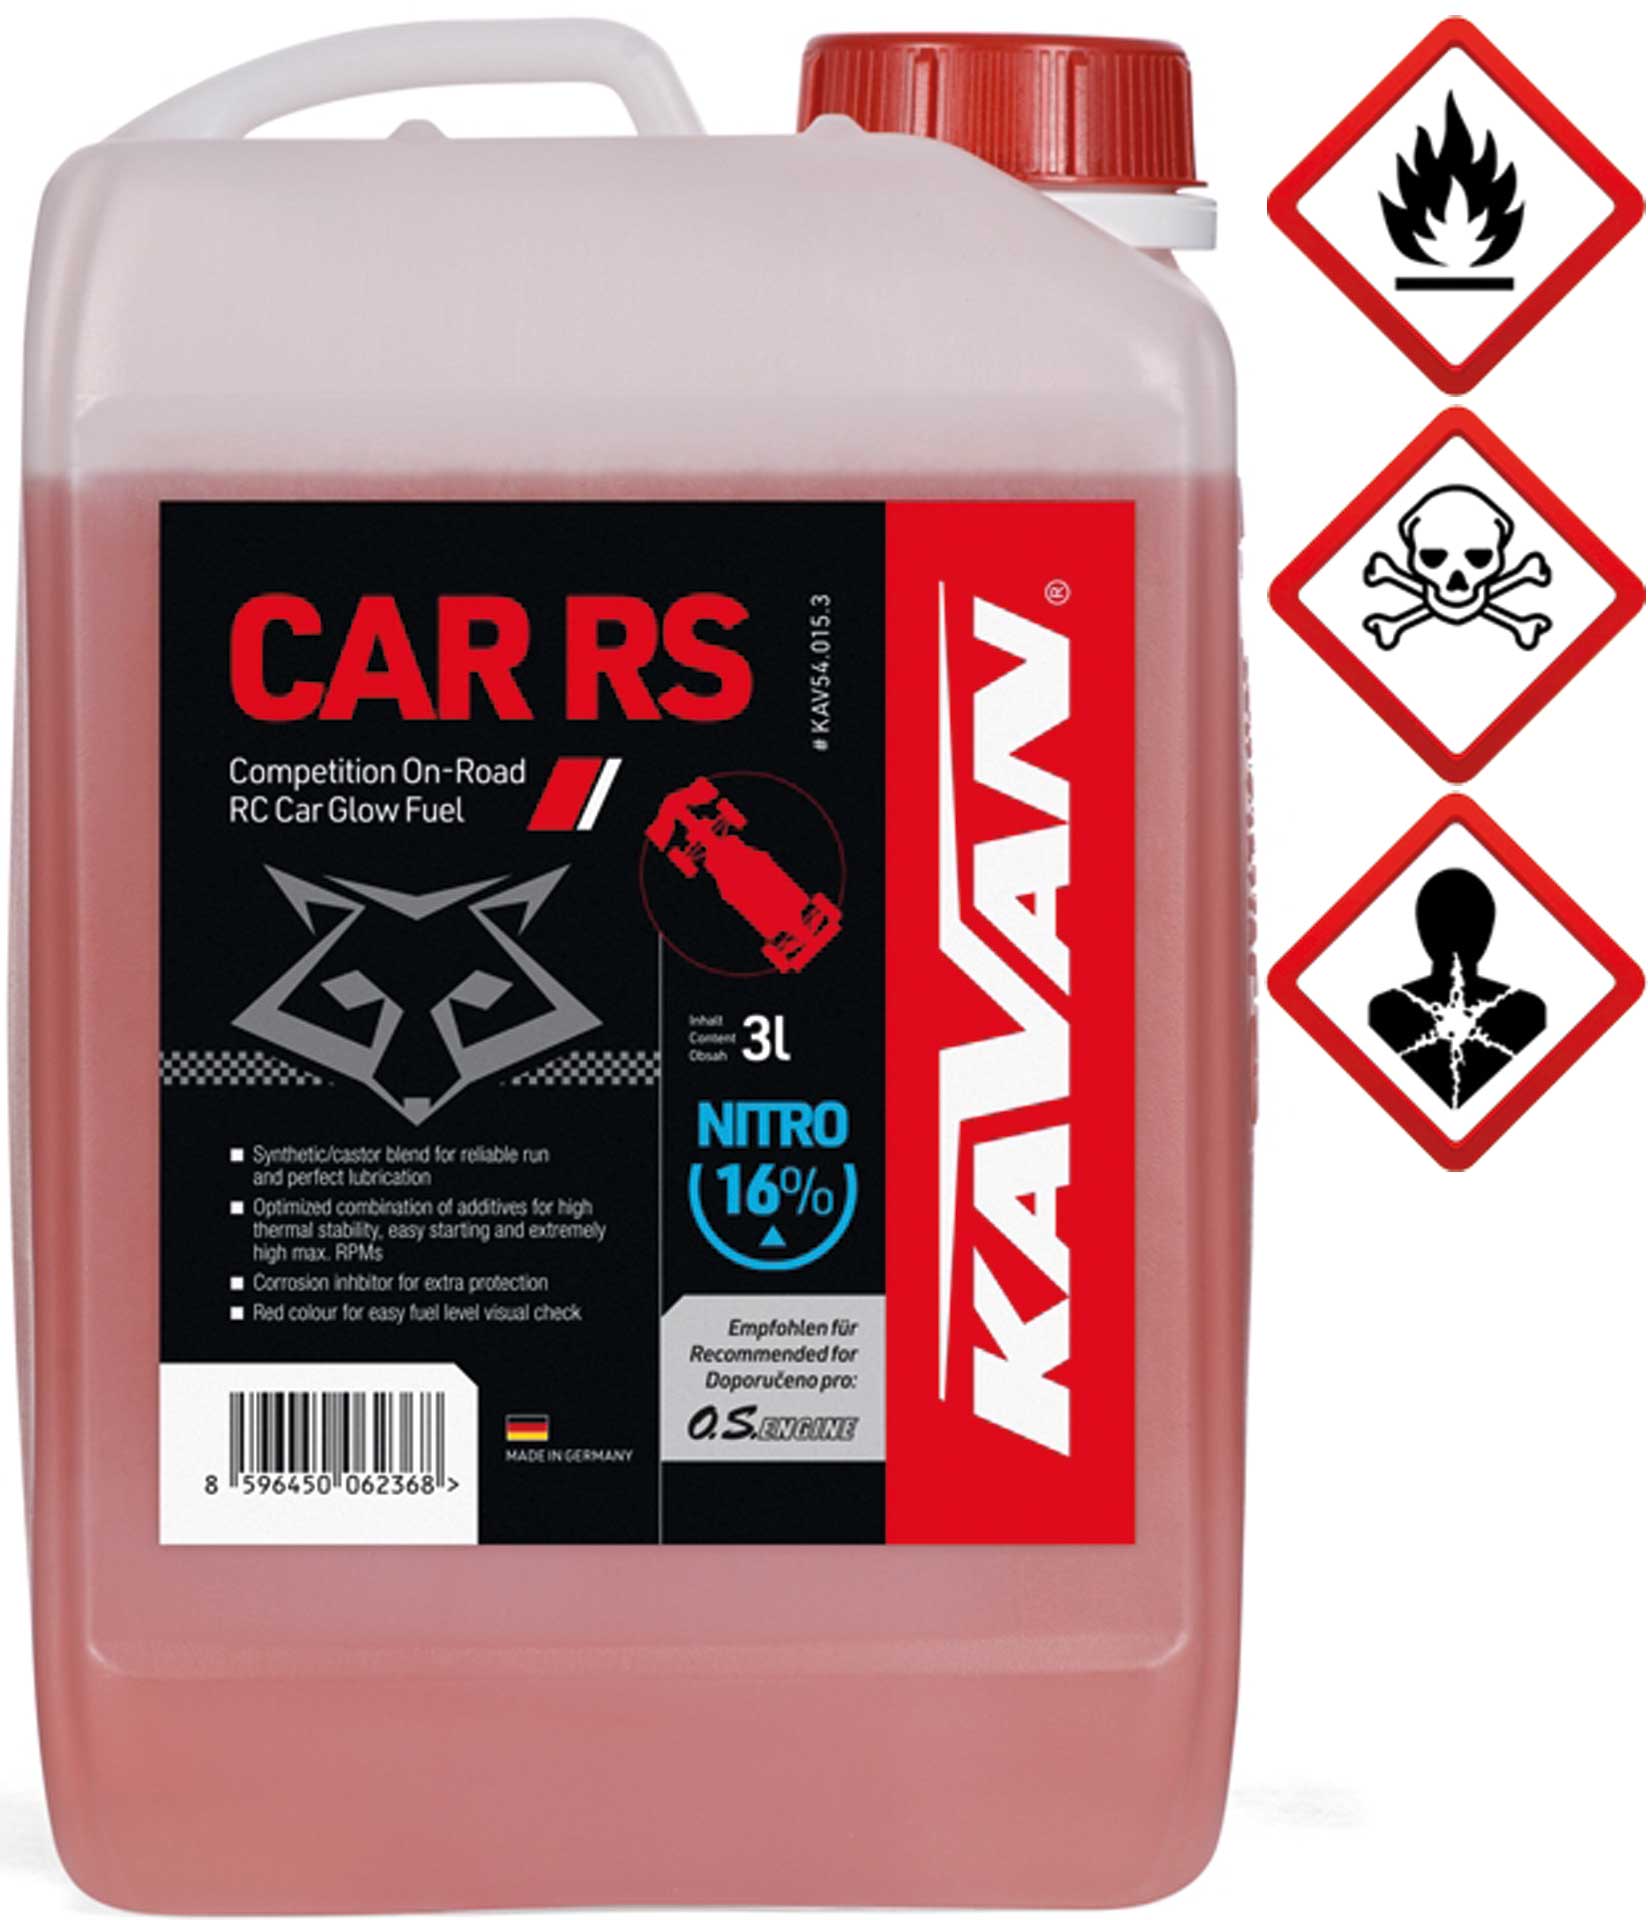 KAVAN Car RS 16% On Road Nitro 3 litres Carburant, carburant, carburant pour moteurs à allumage par incandescence